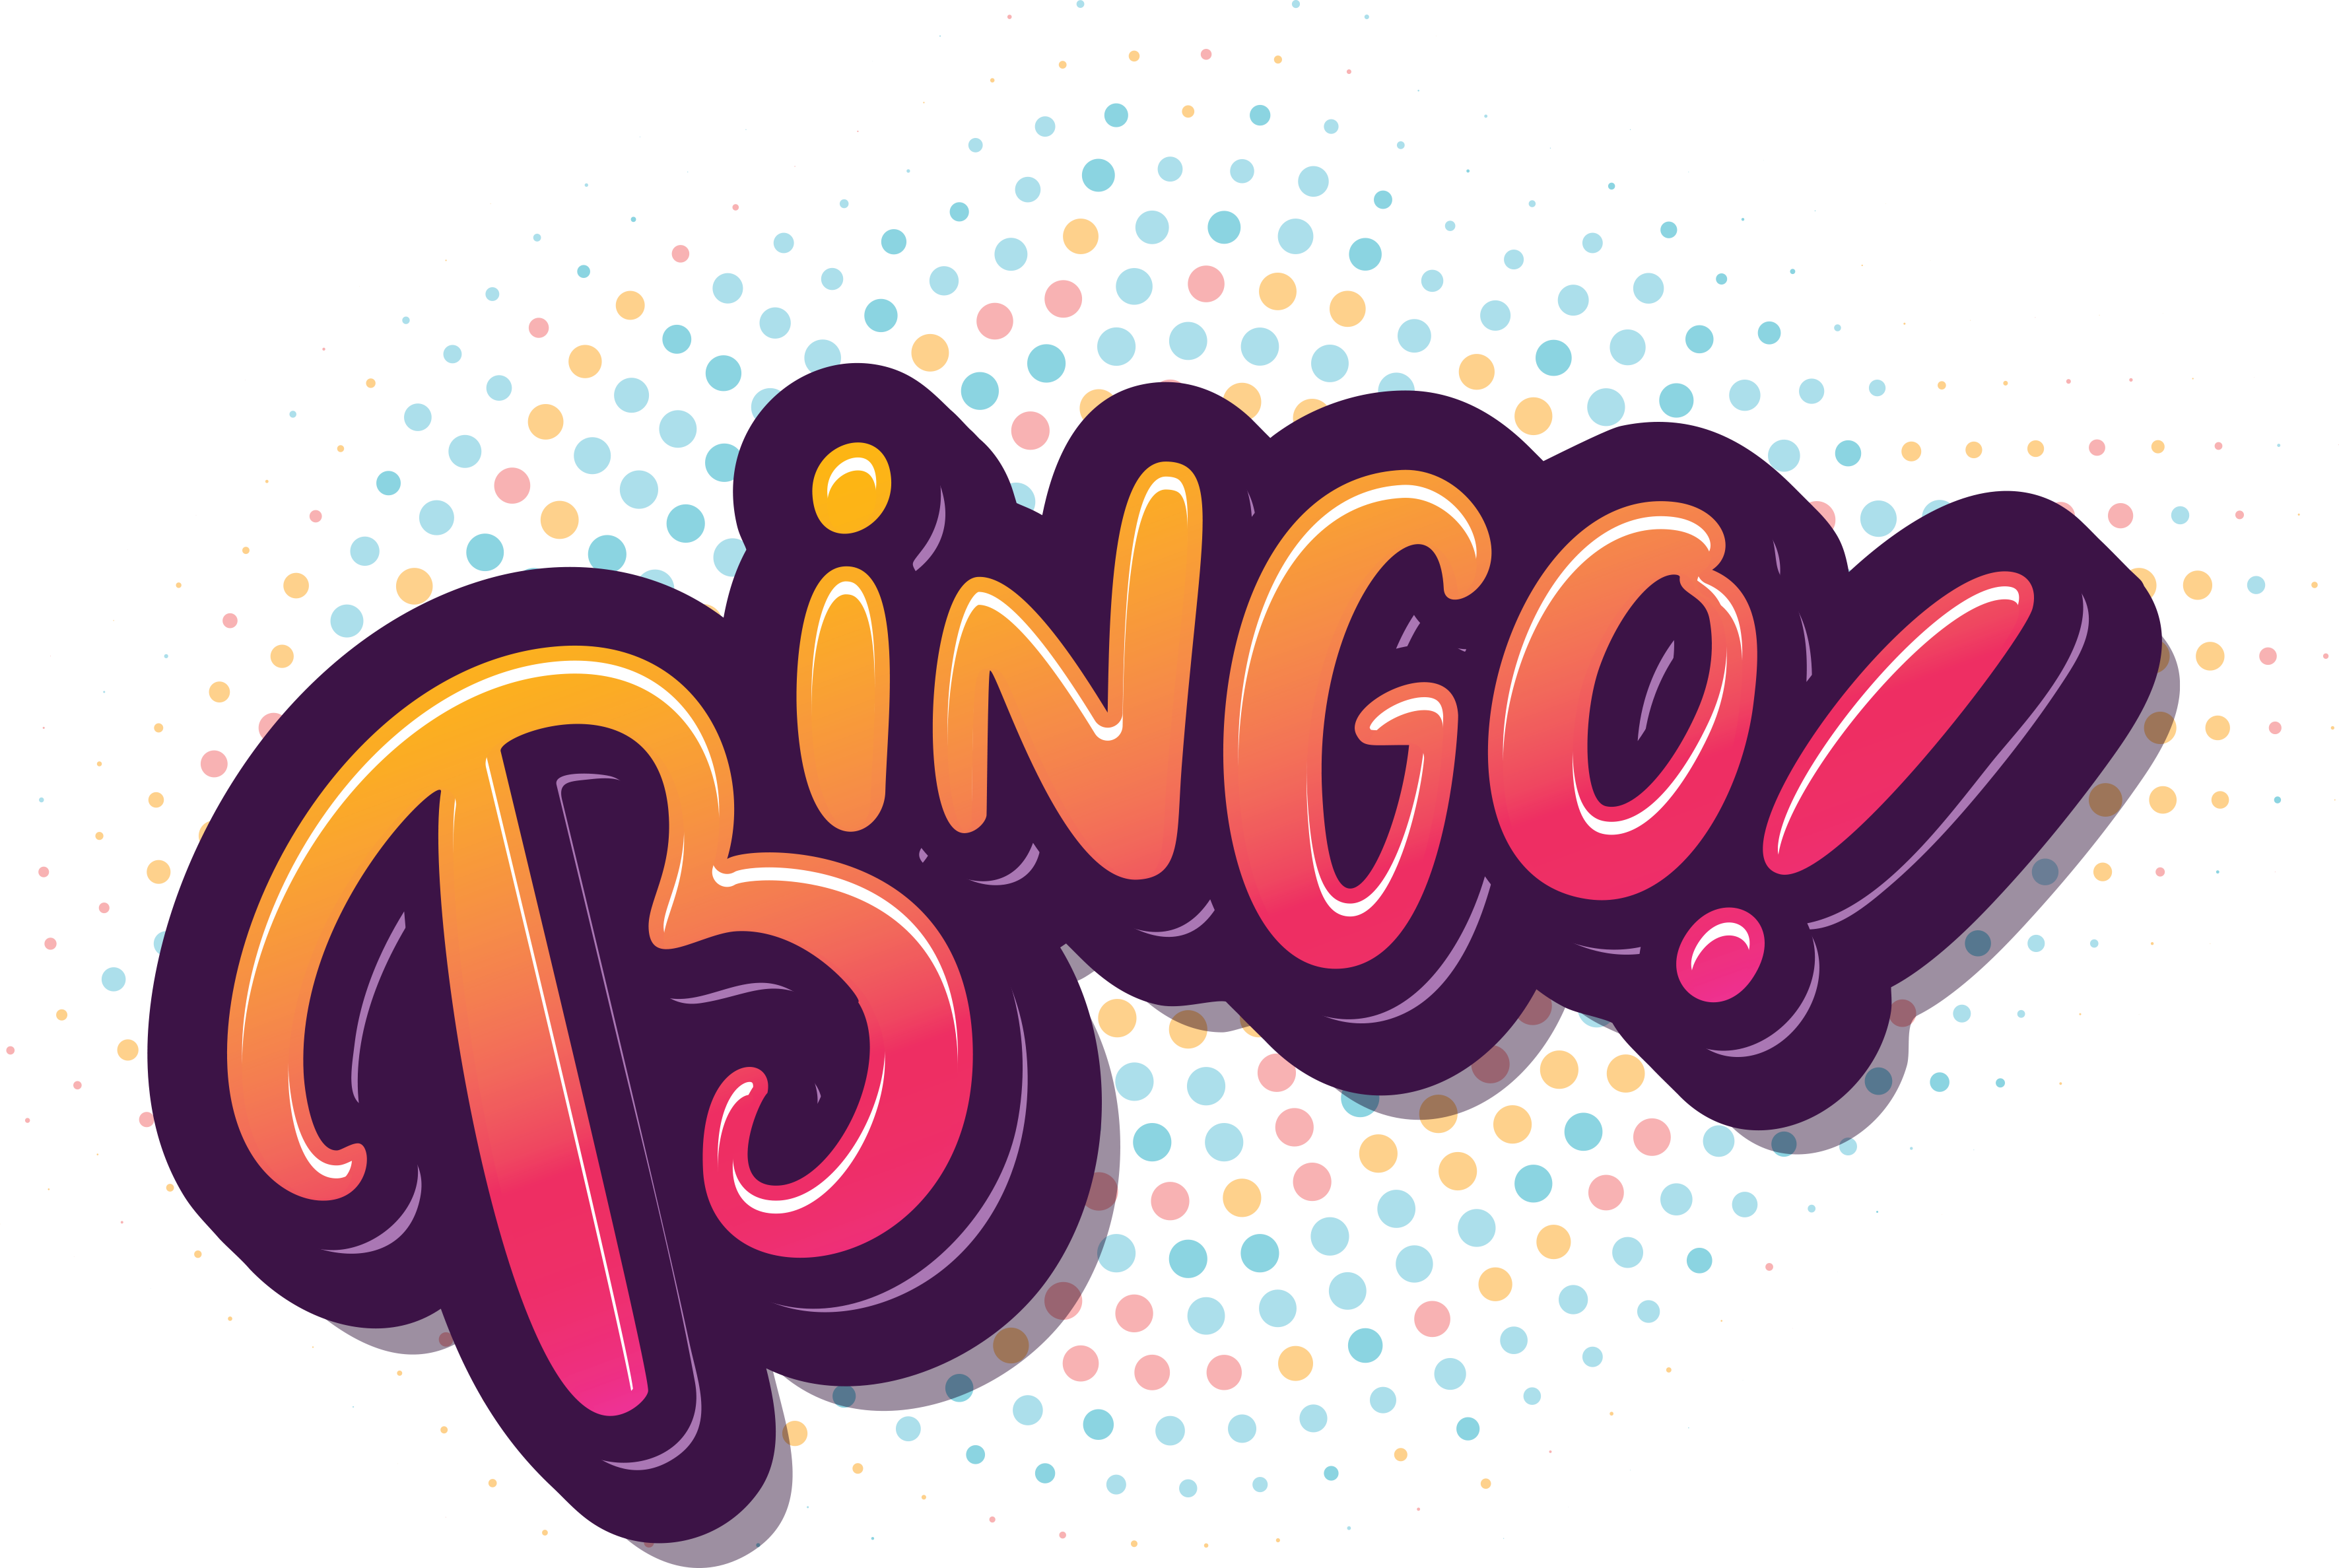 Bingo Photos Game PNG Free Photo PNG Image